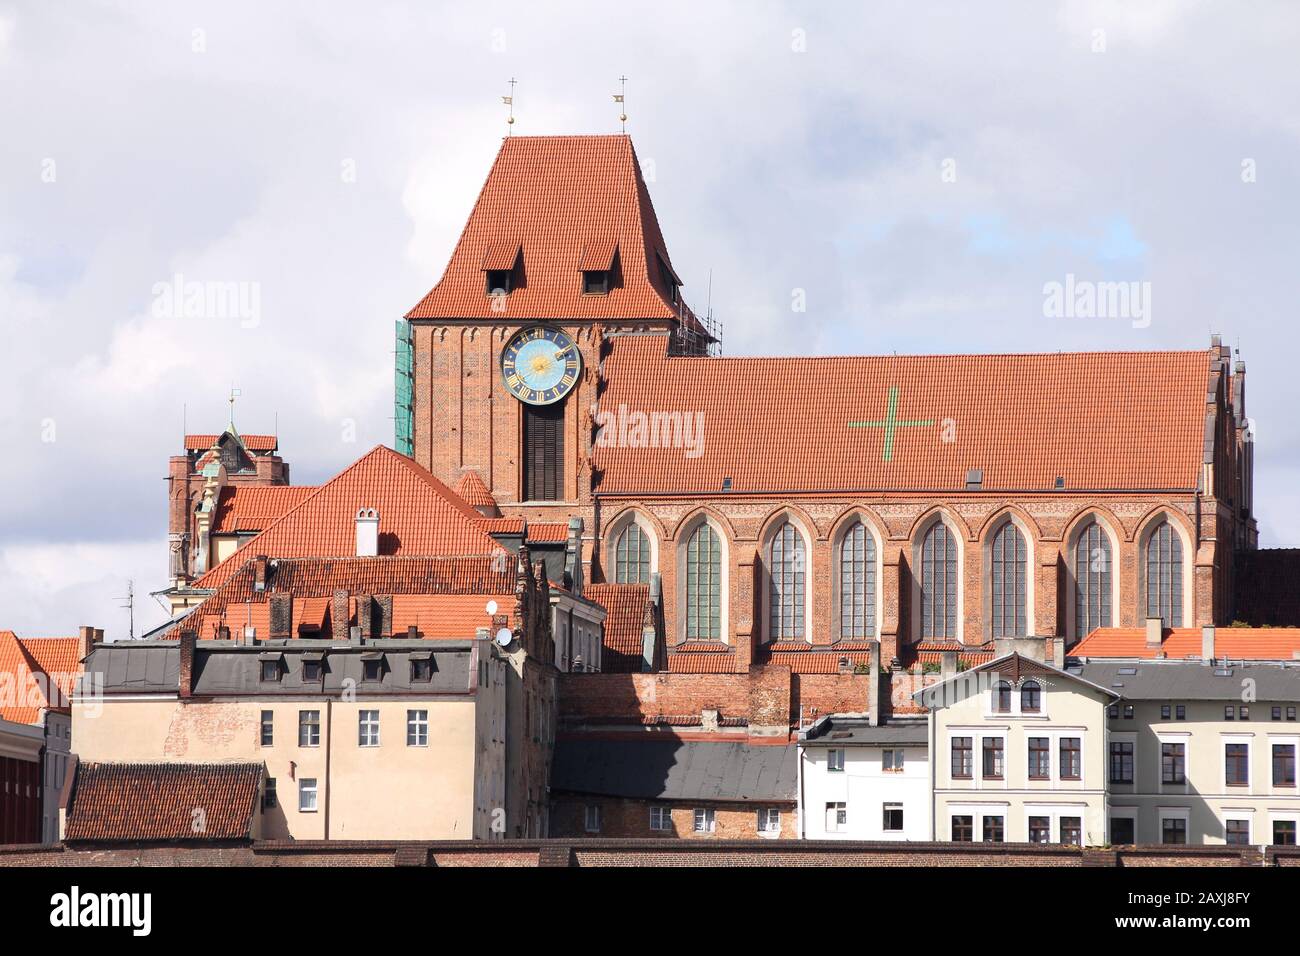 Pologne - Torun, ville divisée par la Vistule entre les régions de la Pomerania et de Kuyavia. Gratte-ciel de la vieille ville avec célèbre basilique cathédrale. Le vieux médiéval Banque D'Images